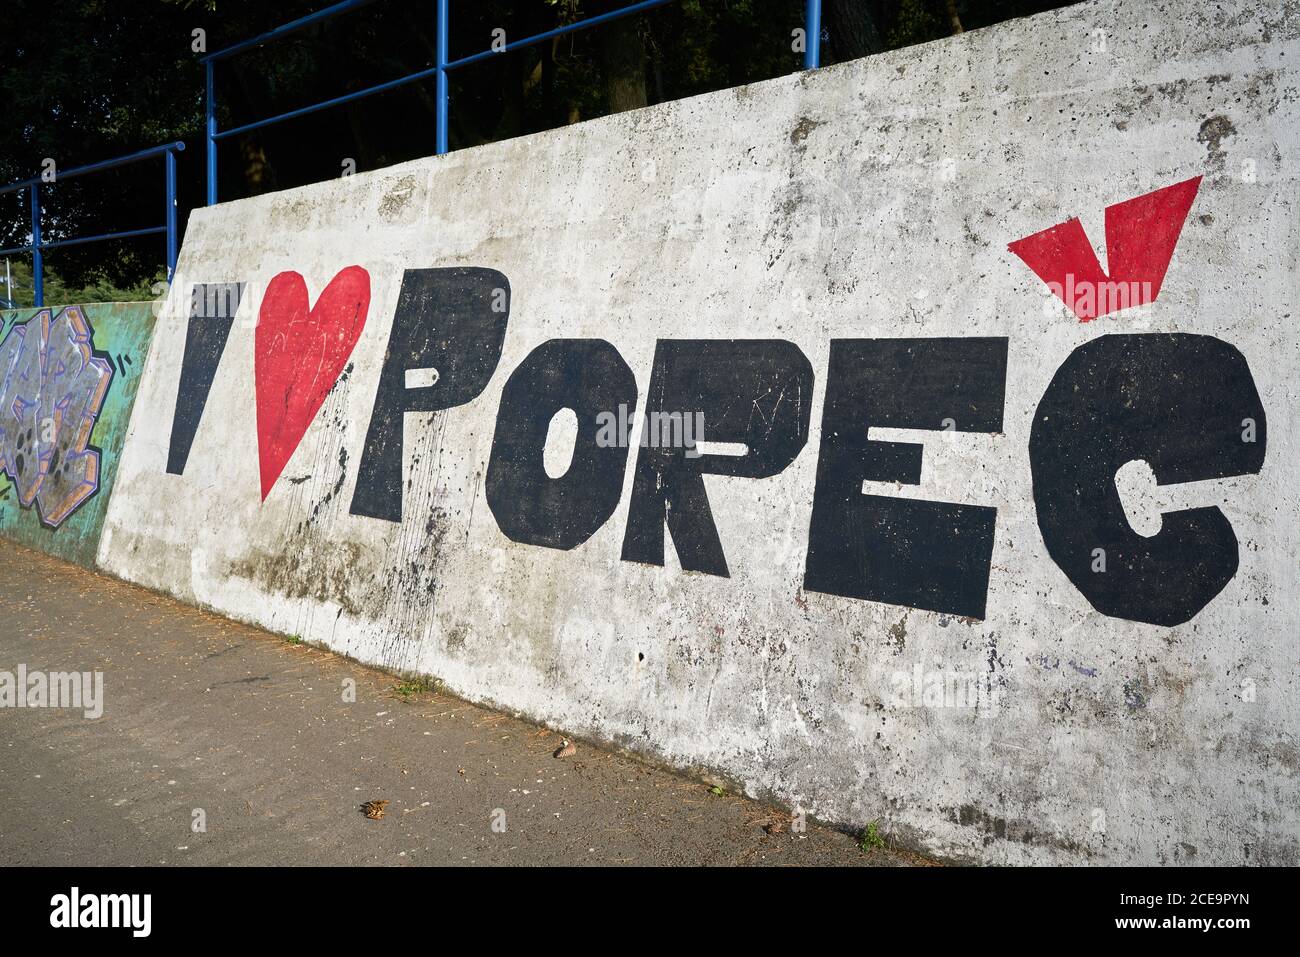 Déclaration d'amour avec les mots que j'aime Porec sur Un mur dans la ville portuaire croate de Porec Banque D'Images